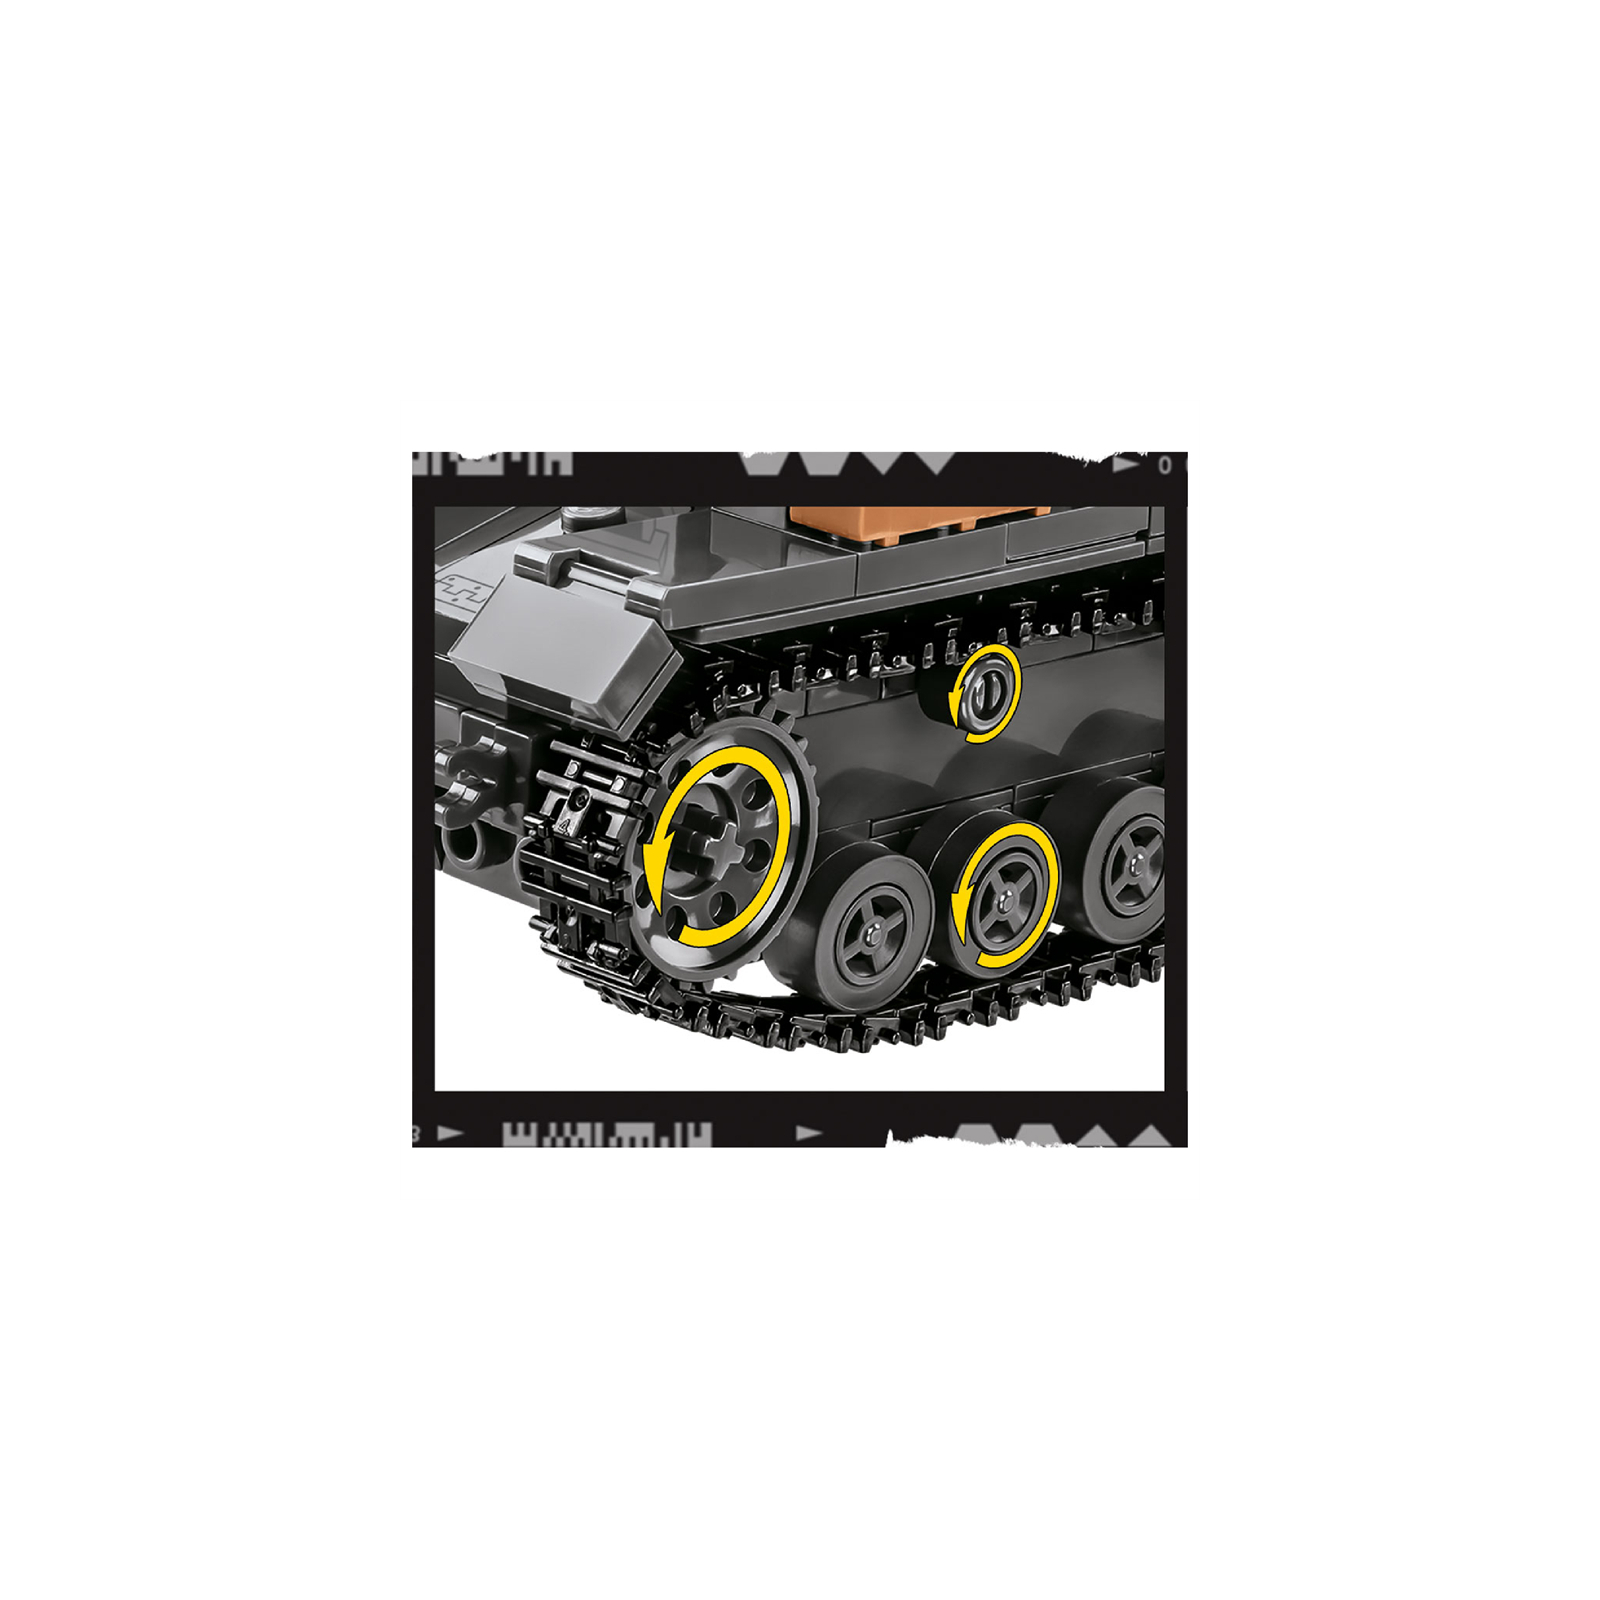 Конструктор Cobi Company of Heroes 3 Танк Panzer IV, 610 деталей (COBI-3045) изображение 5